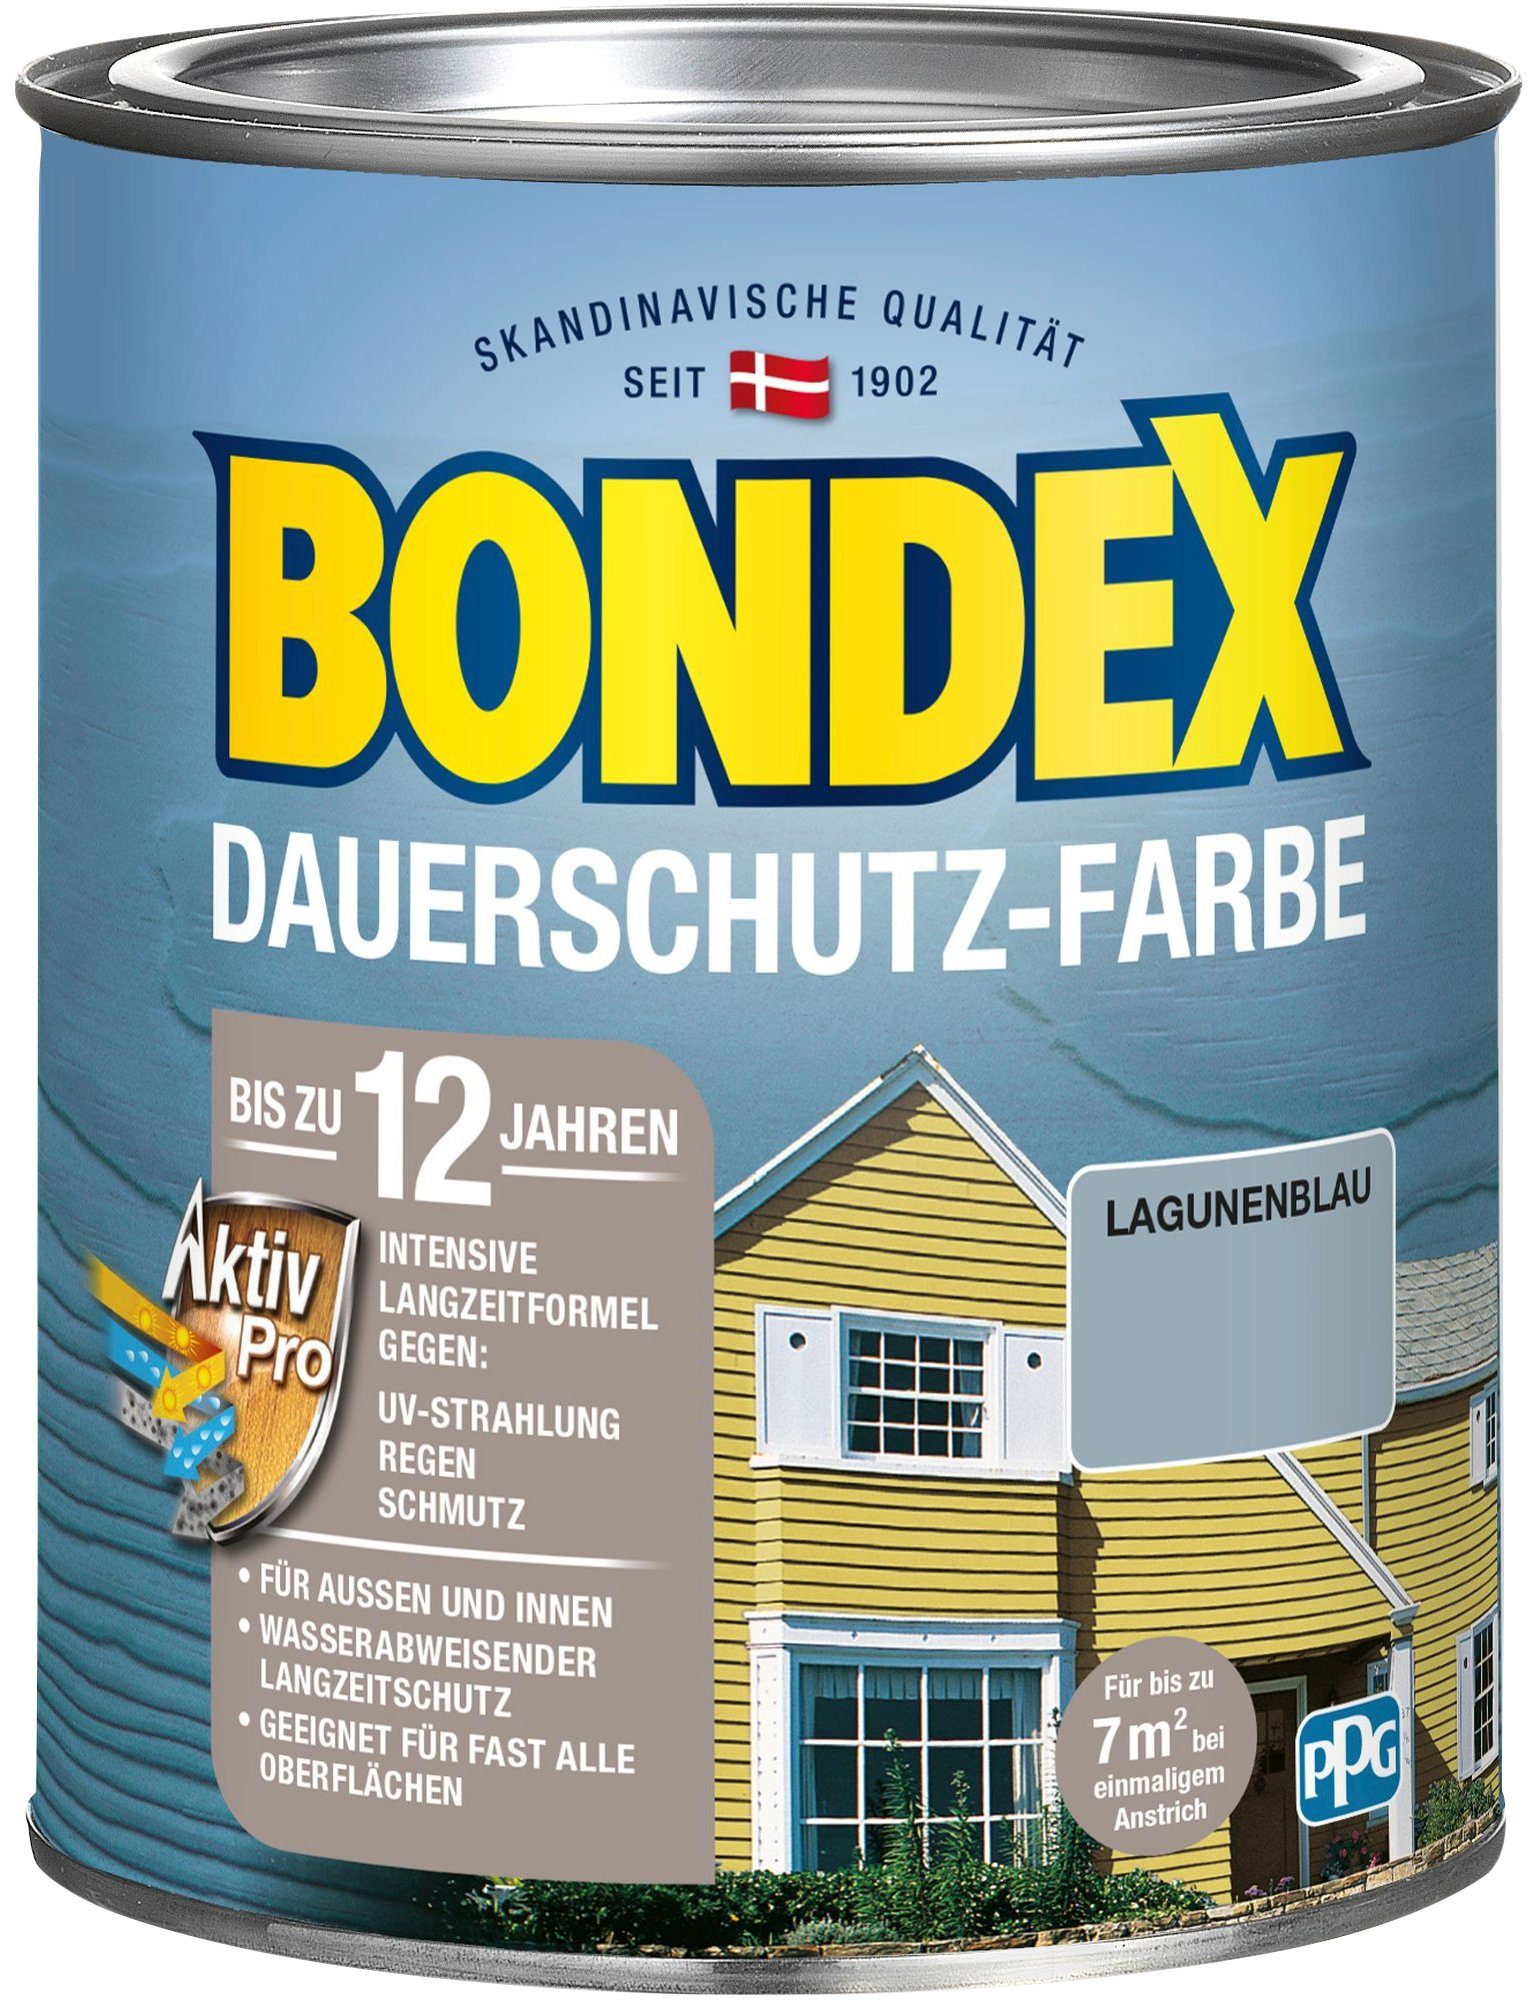 Bondex Wetterschutzfarbe DAUERSCHUTZ-FARBE, für Außen und Innen, Wetterschutz mit Aktiv Pro Langzeitformel Lagunenblau